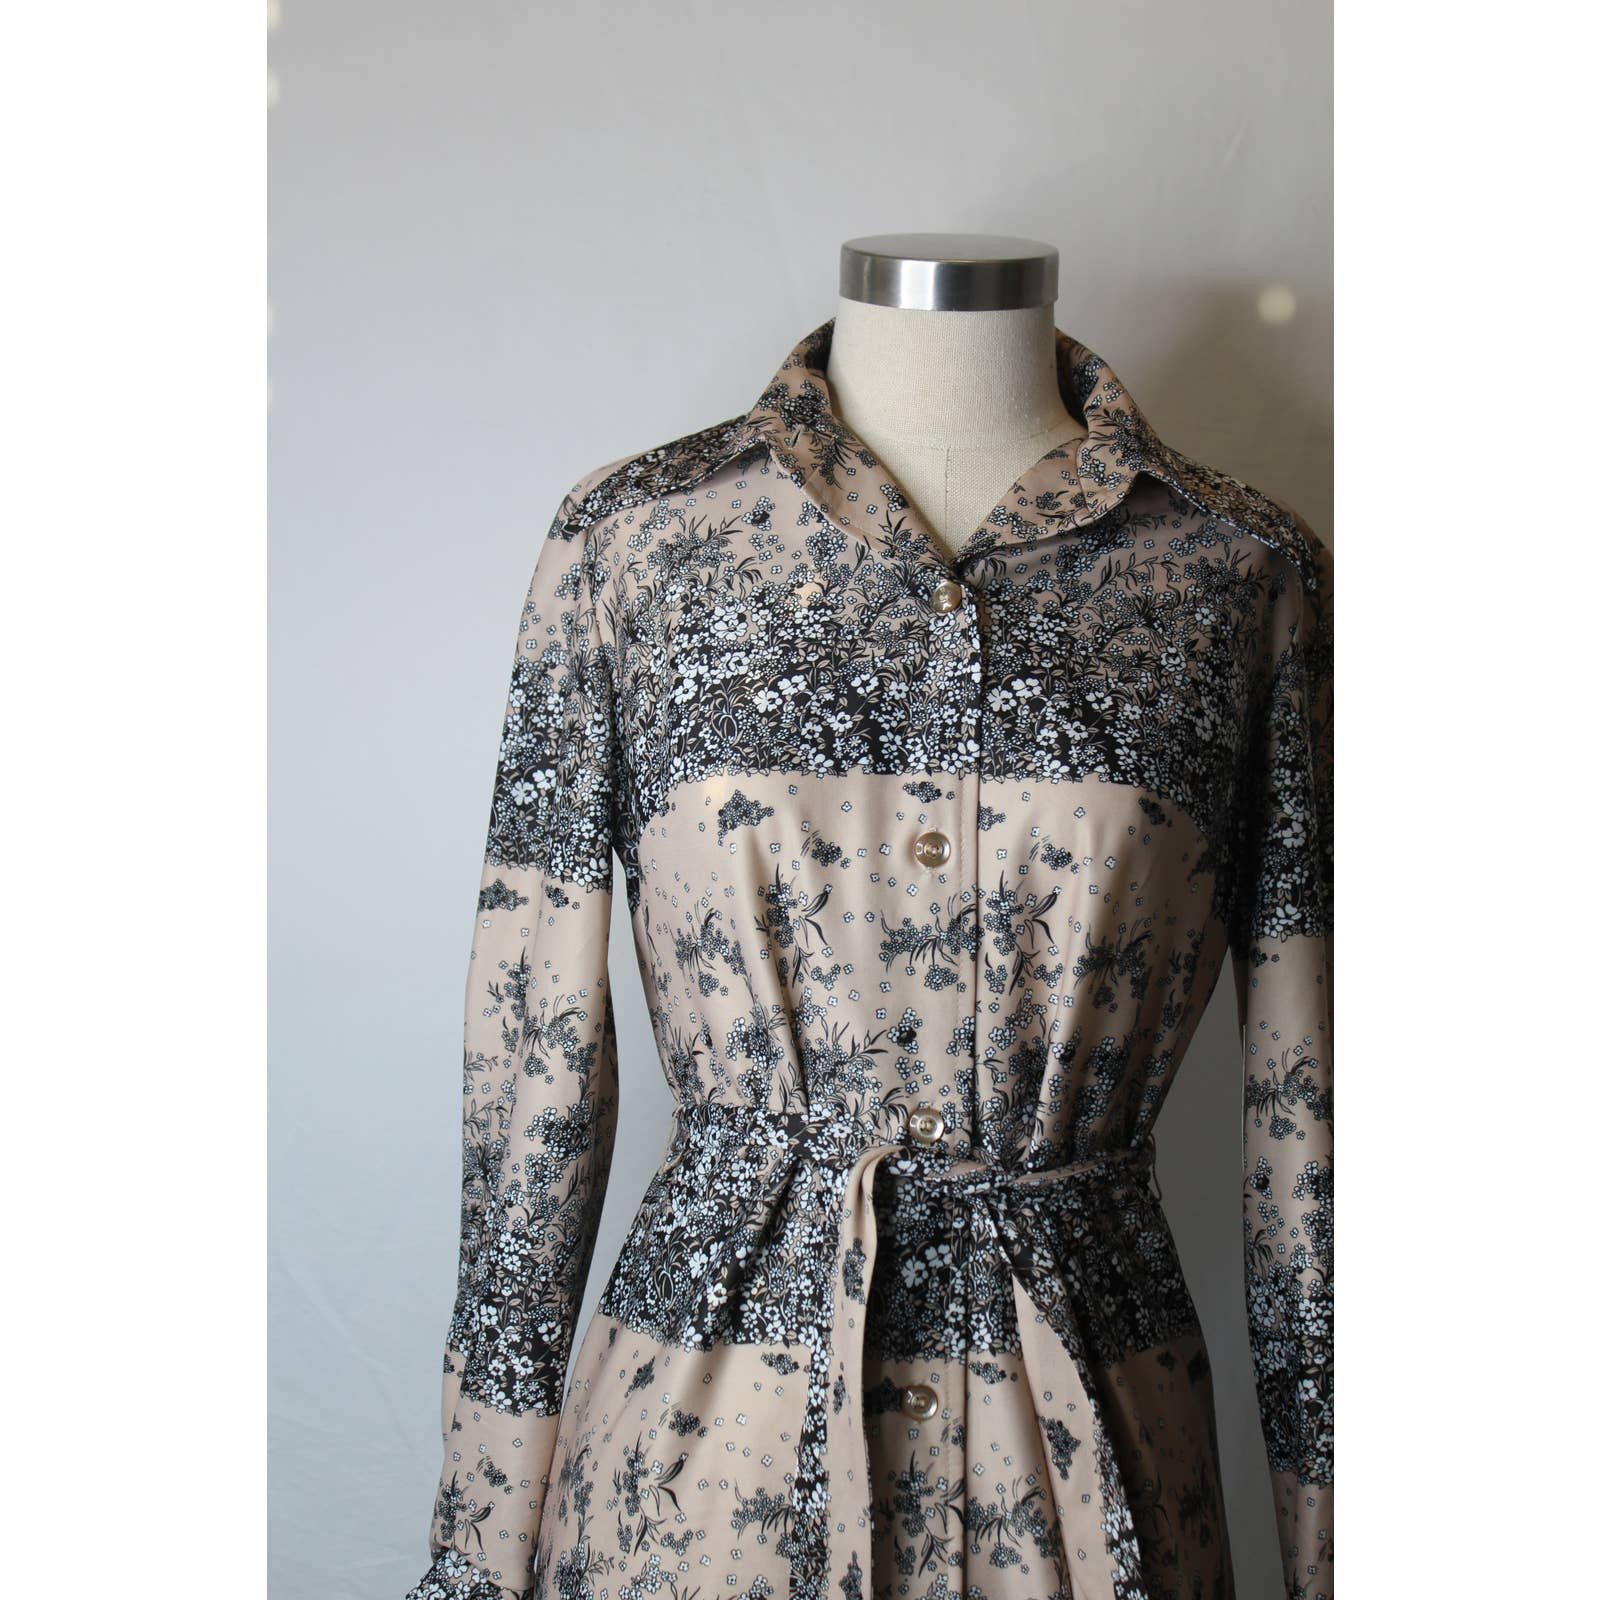 Vintage Vintage 1970s Shirt Dress Midi Neutral Floral Color Block Size M / US 6-8 / IT 42-44 - 5 Thumbnail